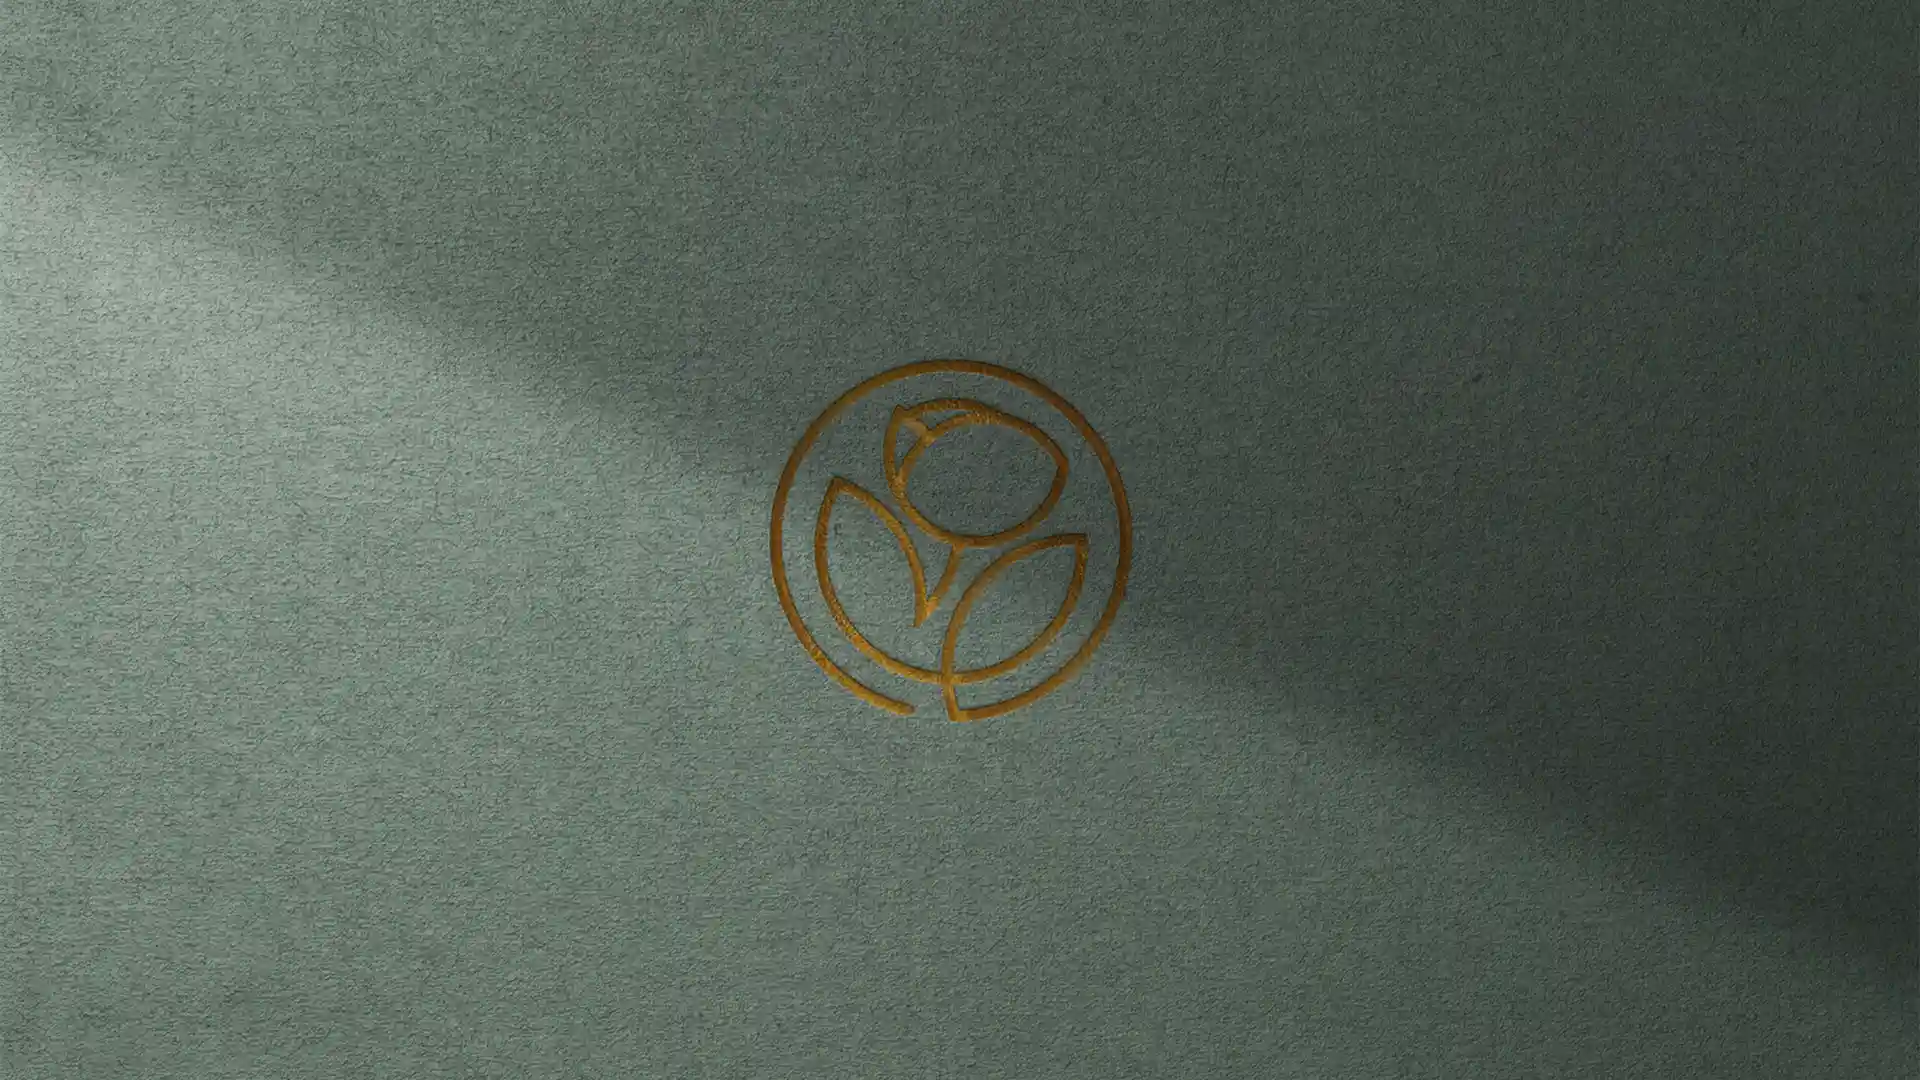 Un logo dorée gravé sur un fond vert. Le logo est linaire en un seul trait et représente une fleur. C'est un joli logo moderne et épuré. L'image sert à illustrer l'article qui explique pourquoi je recycle mes logos